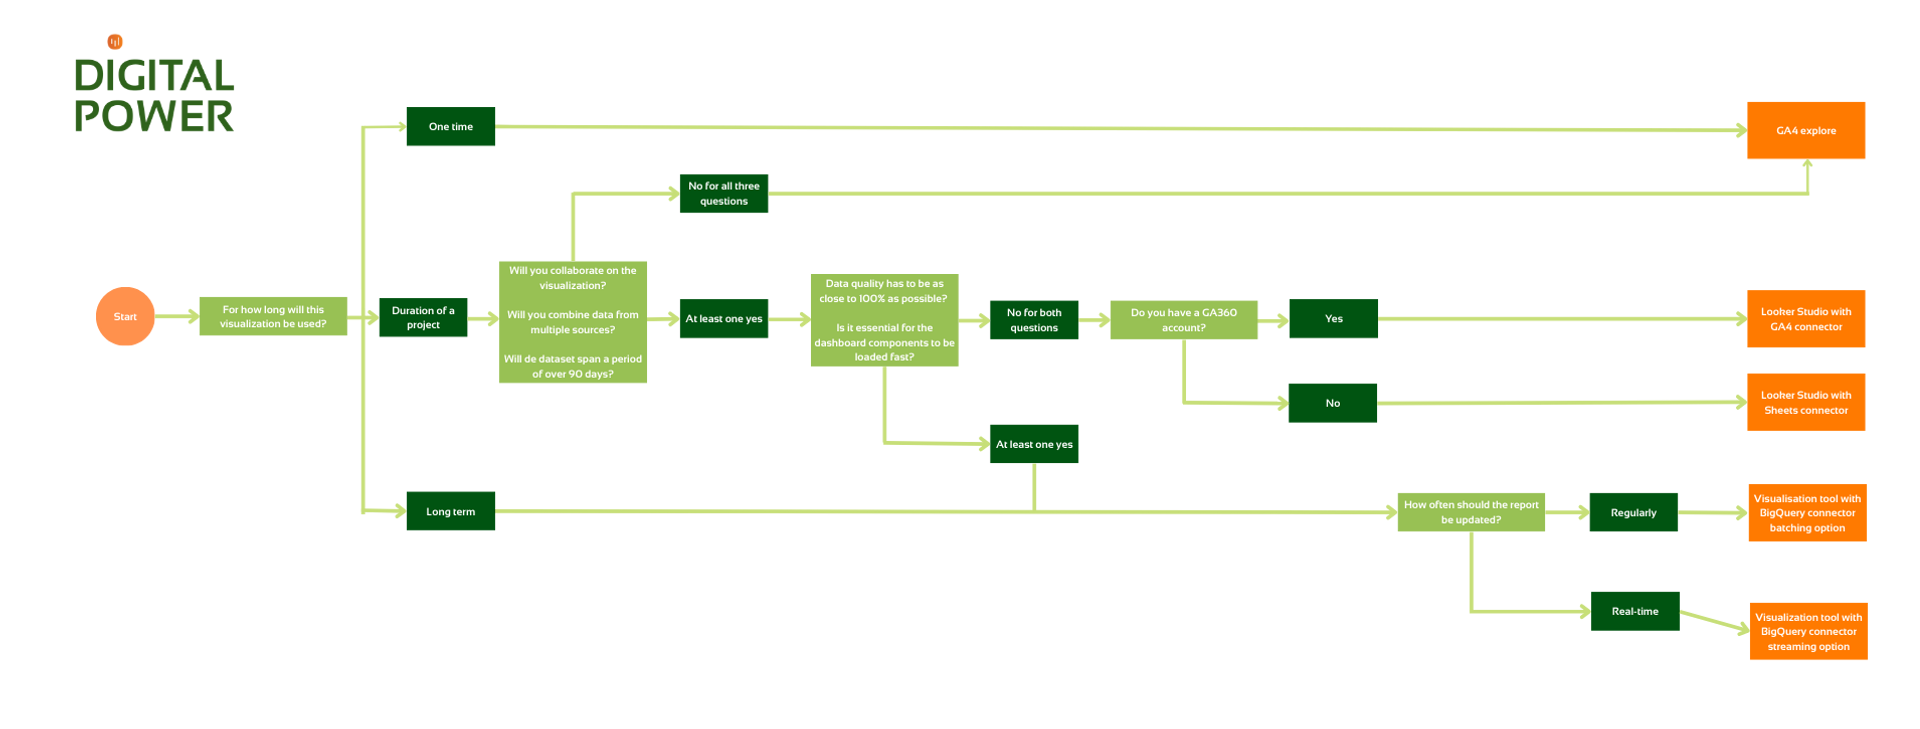 GA4 decision tree